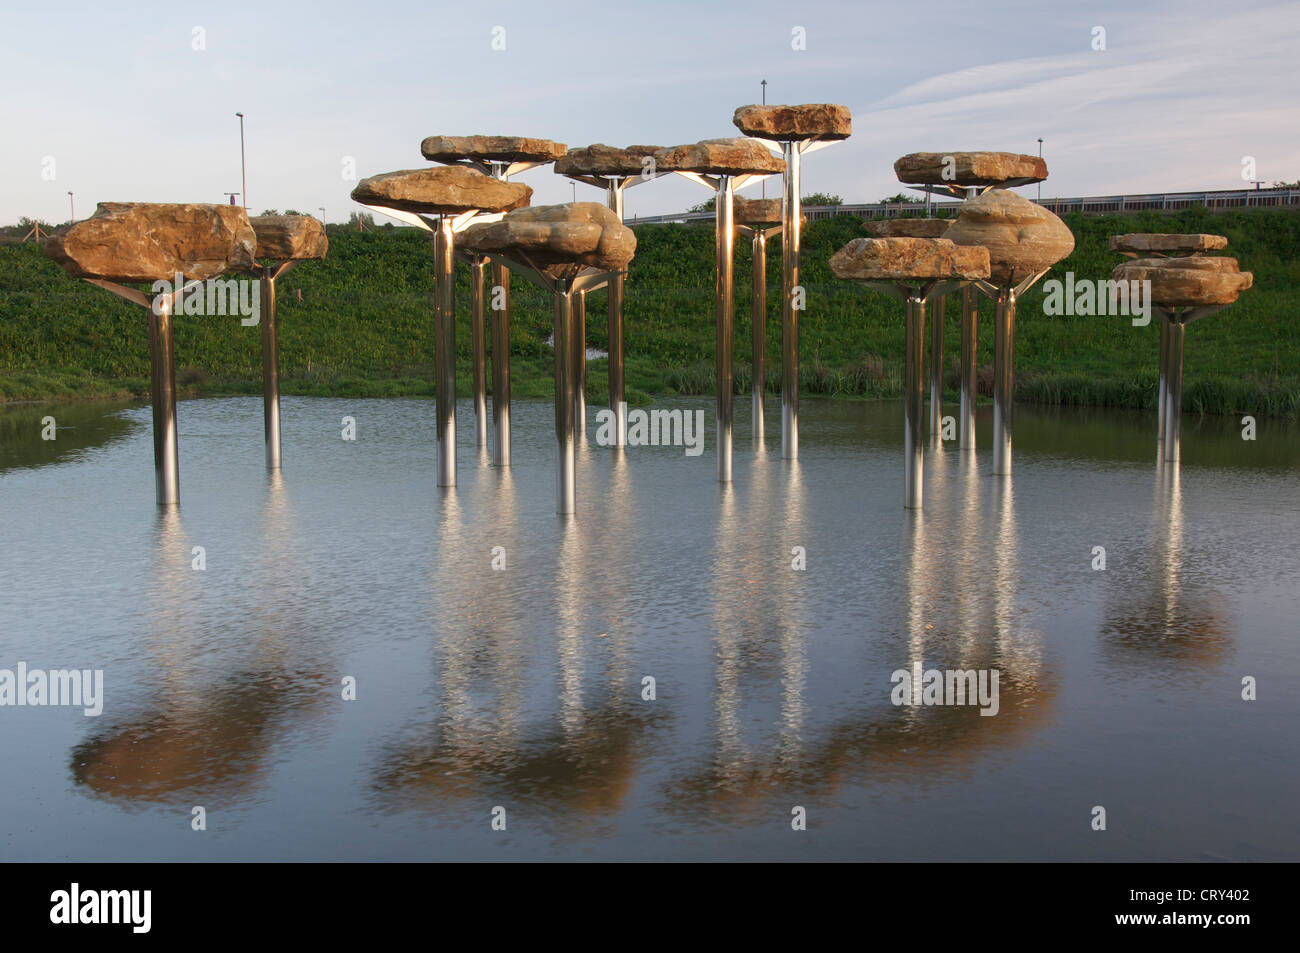 Jurassic Steinen, ein riesiges neues Kunstwerk in Weymouth, Veranstaltungsort für die 2012 Olympischen Segel-Events. Bildhauers Richard Harris. Dorset, England, Vereinigtes Königreich. Stockfoto